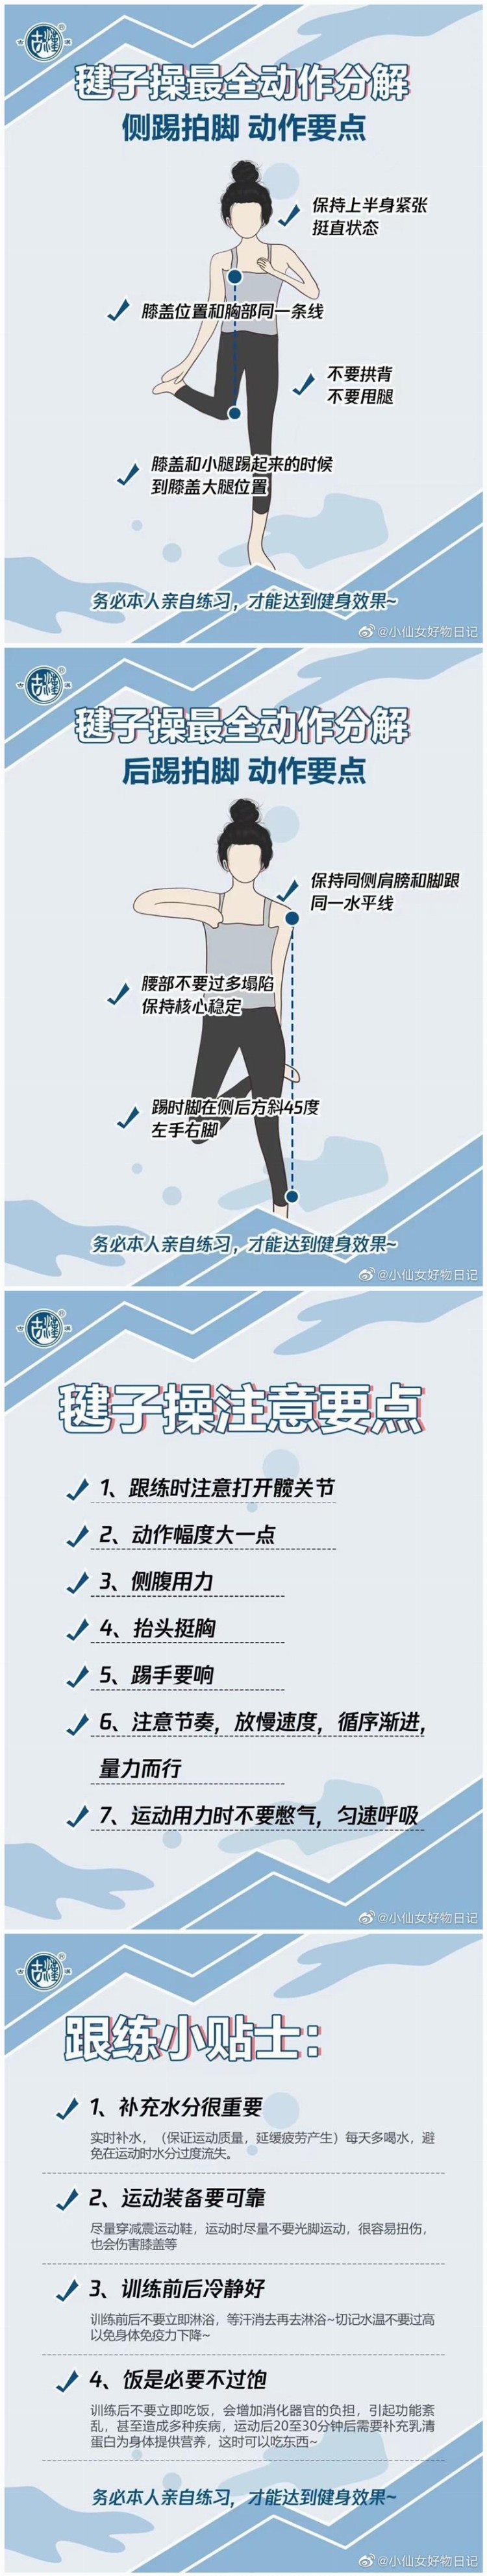 专属“刘畊宏女孩”的说明书，广西美容健身培训分享